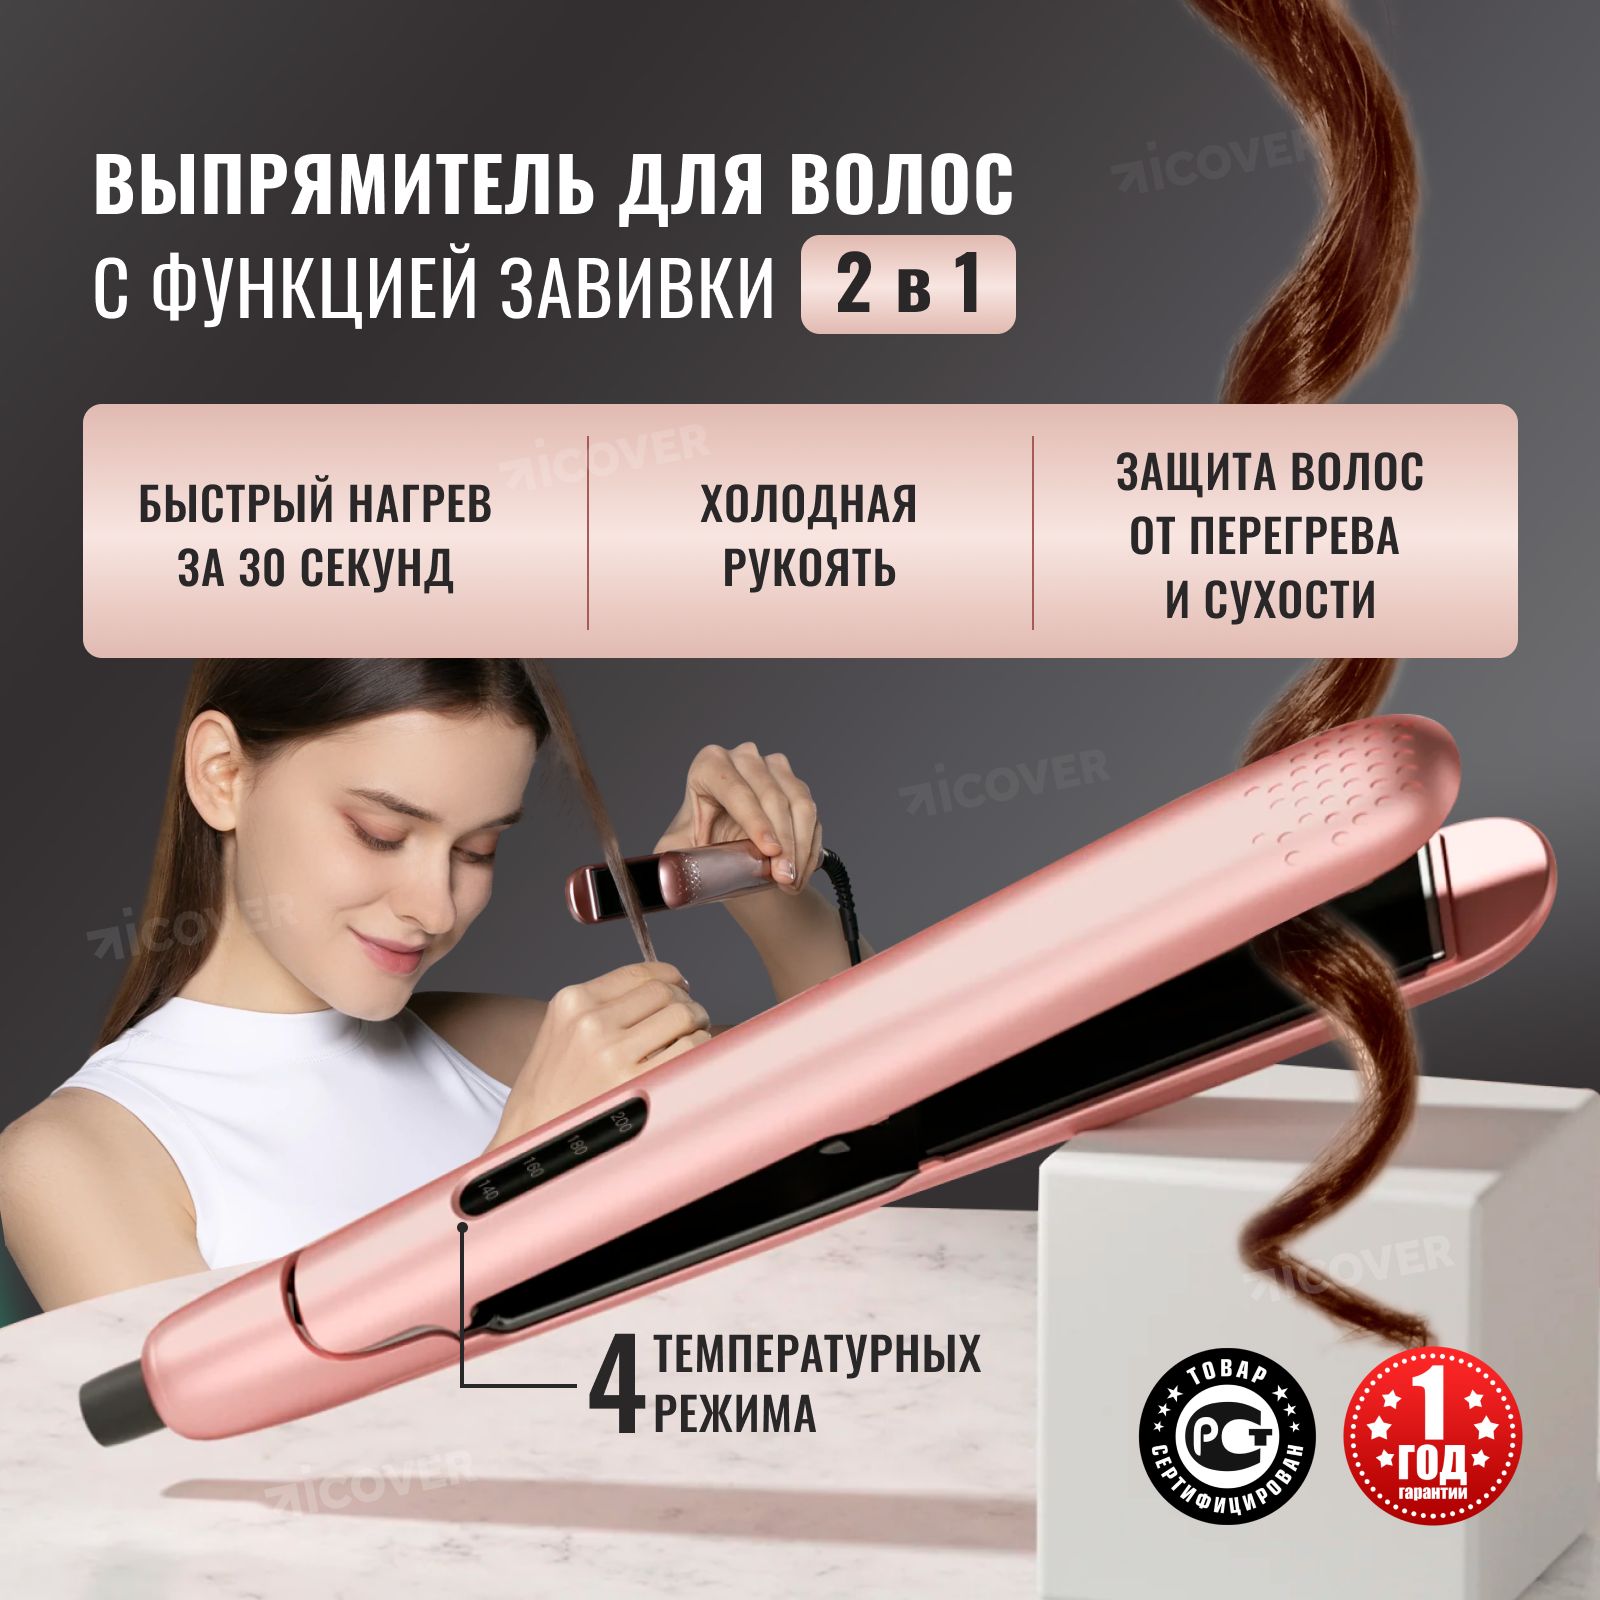 Выпрямитель для волос Enchen Enrollor Hair curling iron стайлер 2 в 1, плойка для завивки волос, щипцы утюжок профессиональный для выпрямления и завивки волос с керамическими пластинами, подарок на 8 марта маме, девушке, сестре